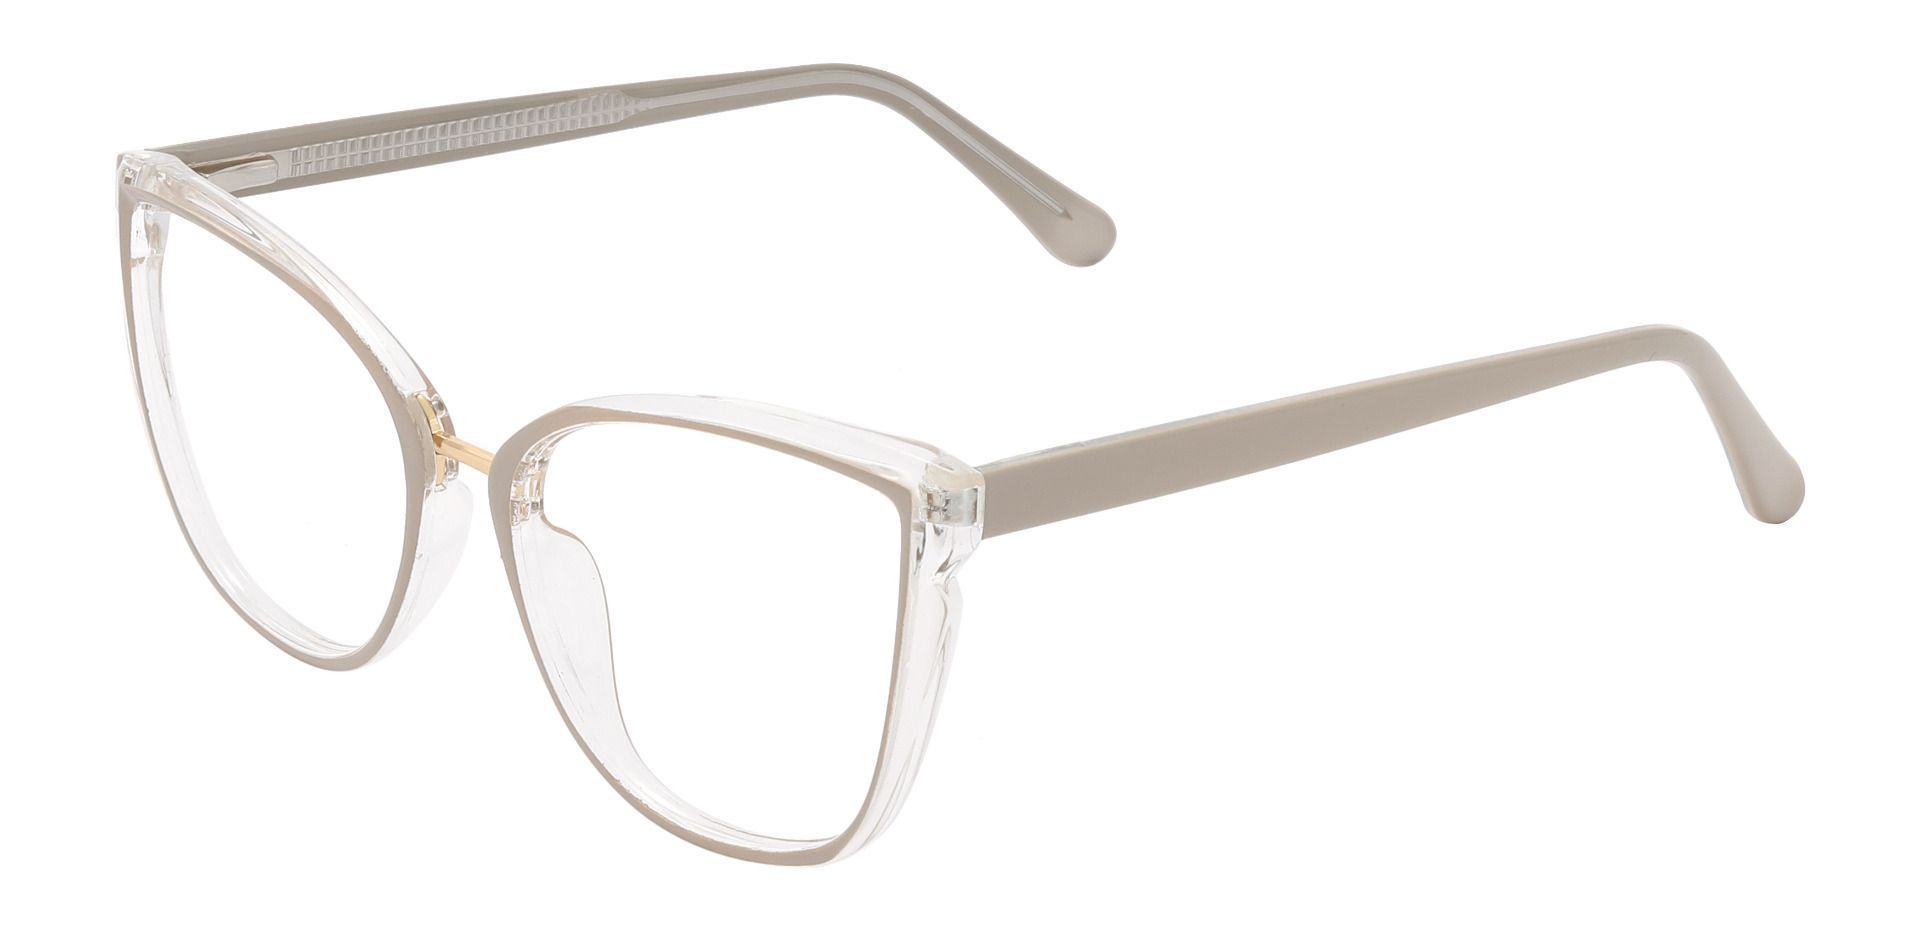 Shyla Cat Eye Prescription Glasses - Gray